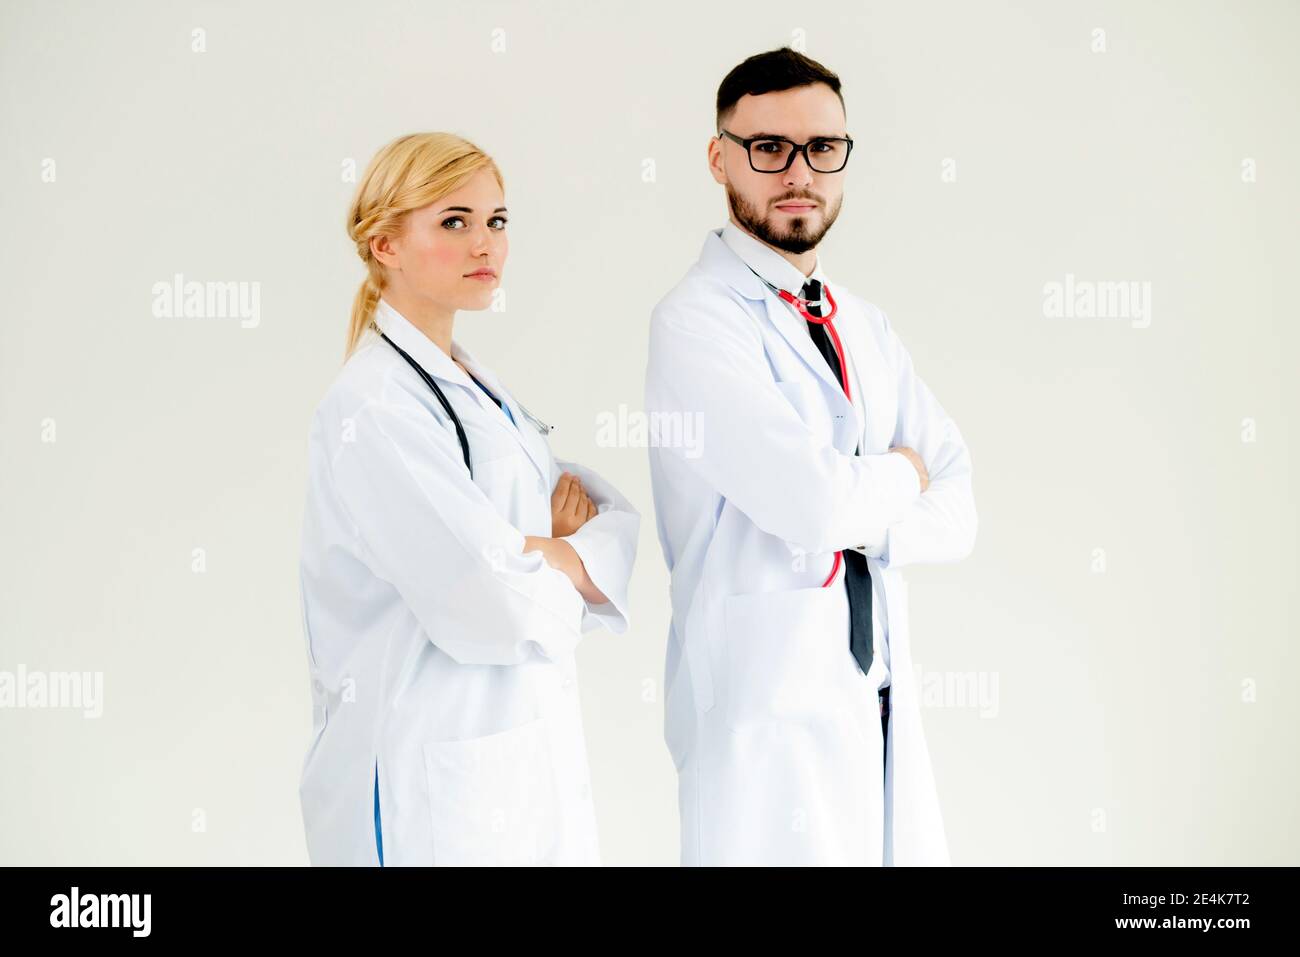 Confident doctors standing sur fond blanc avec les bras croisés. Concept de l'équipe de soins médicaux professionnels. Banque D'Images